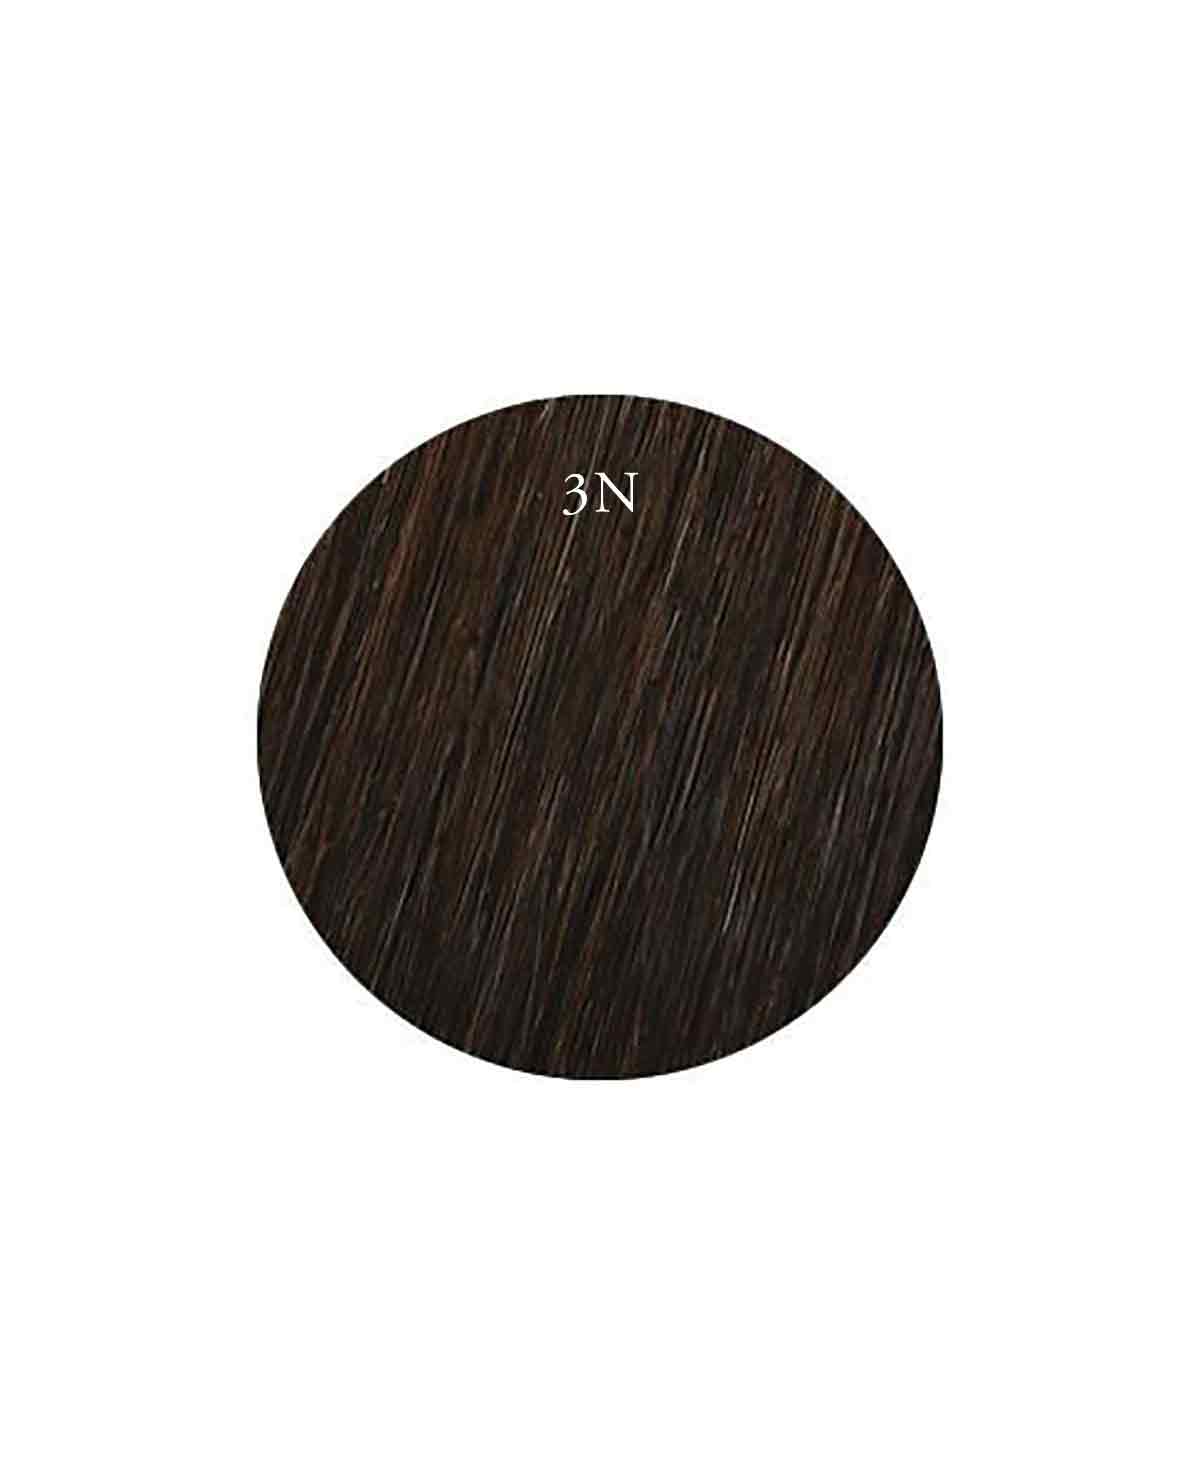 Showpony 45-50cm (20") Slim Tape Extensions - 3N Black Brown 